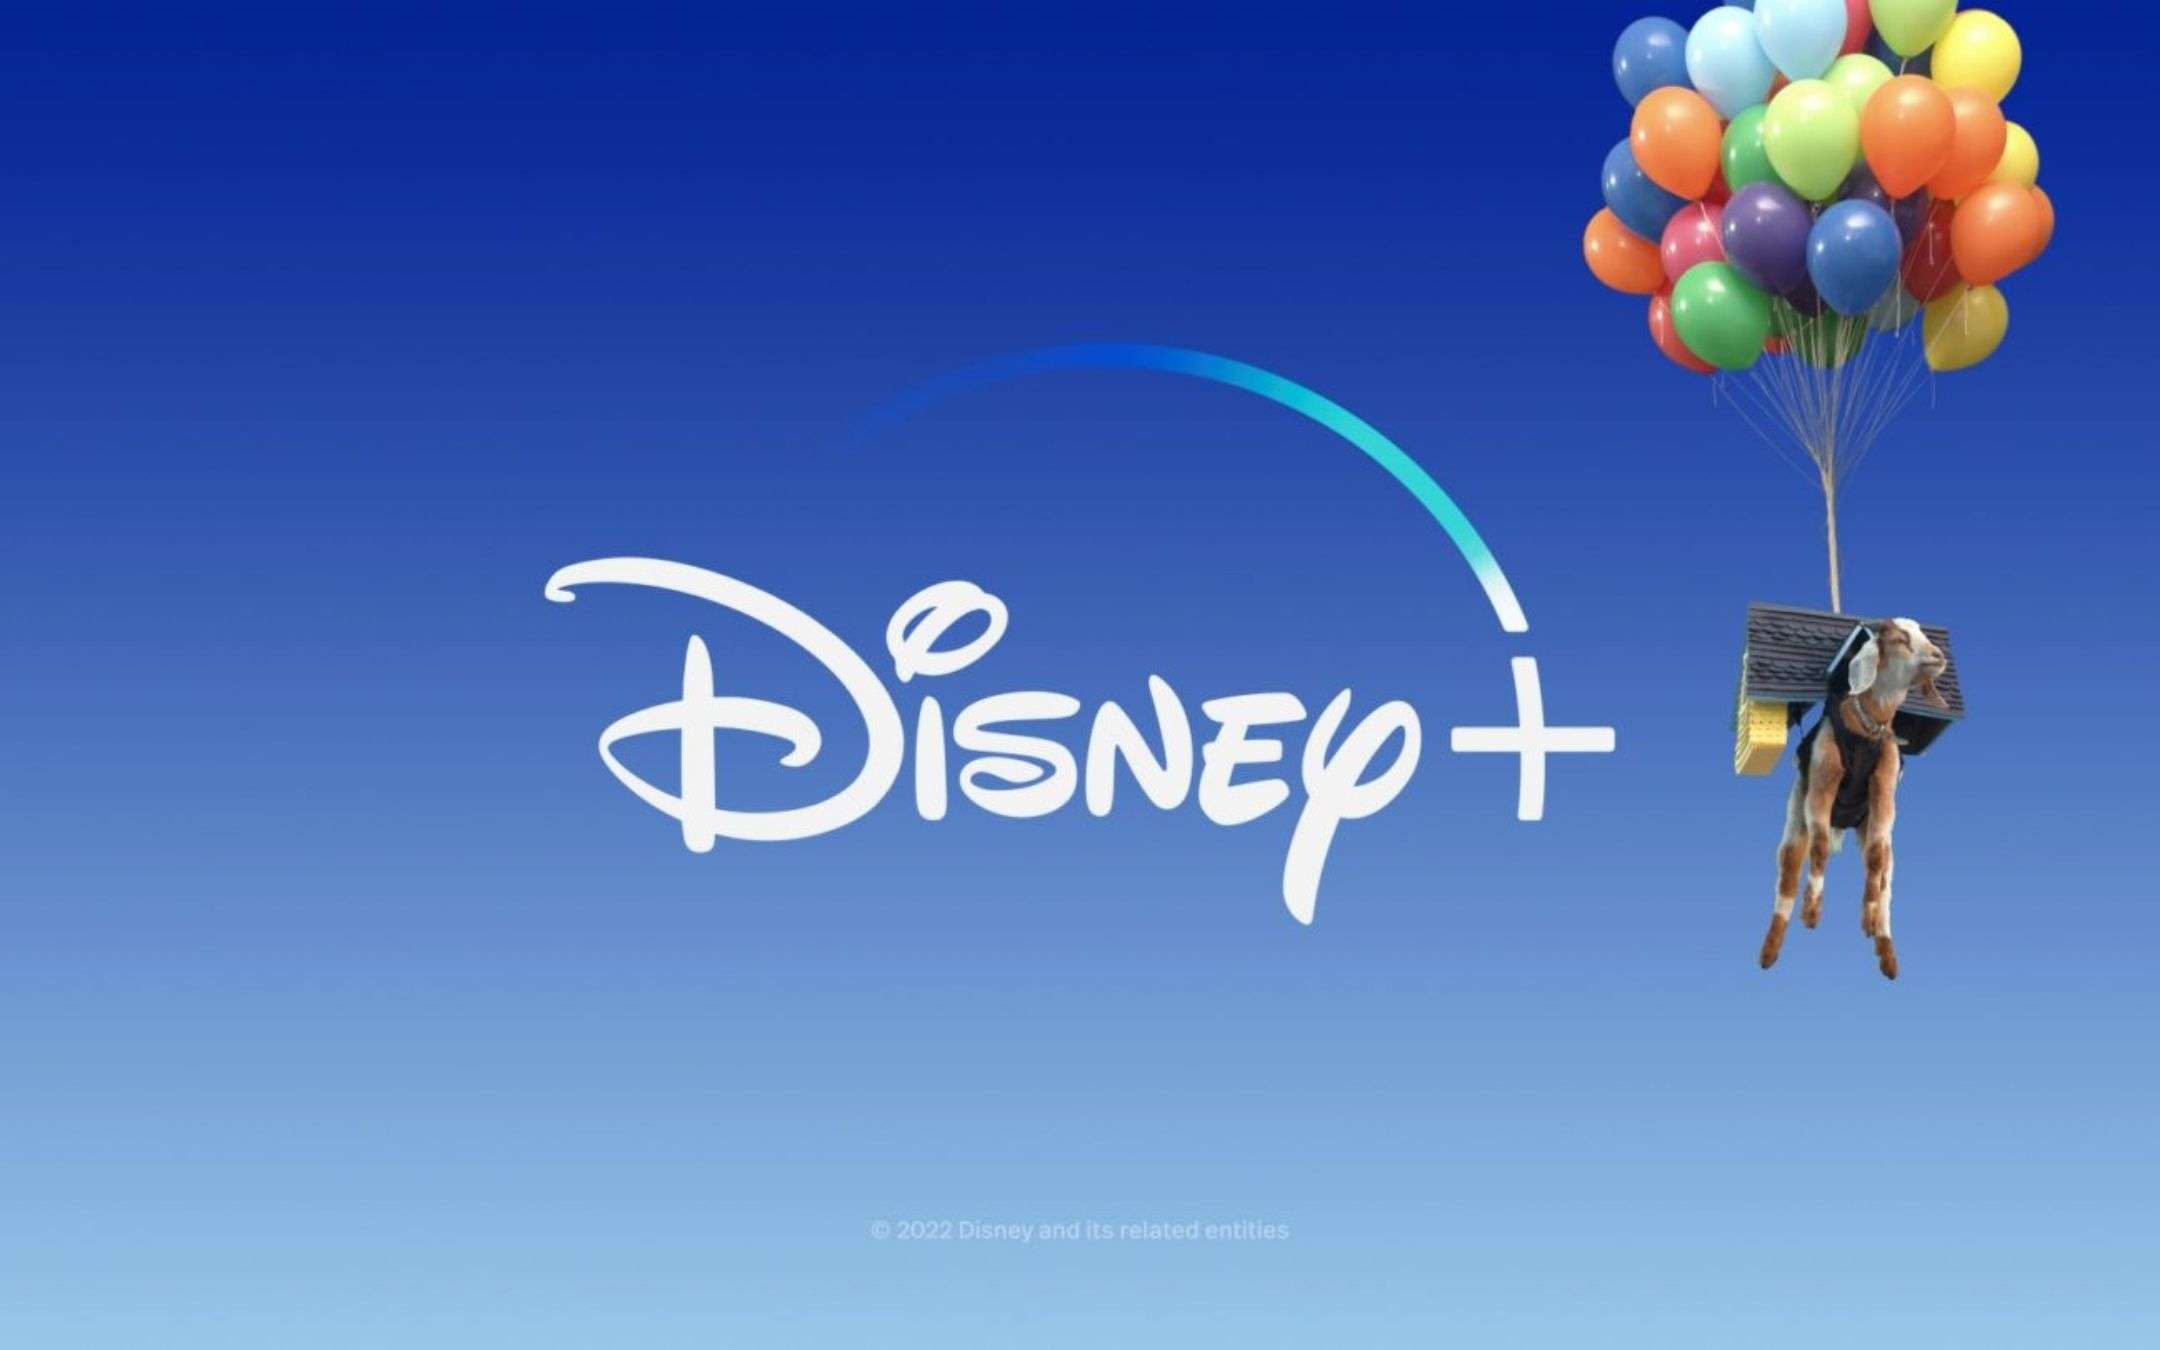 Disney+: in arrivo l'abbonamento economico, con pubblicità